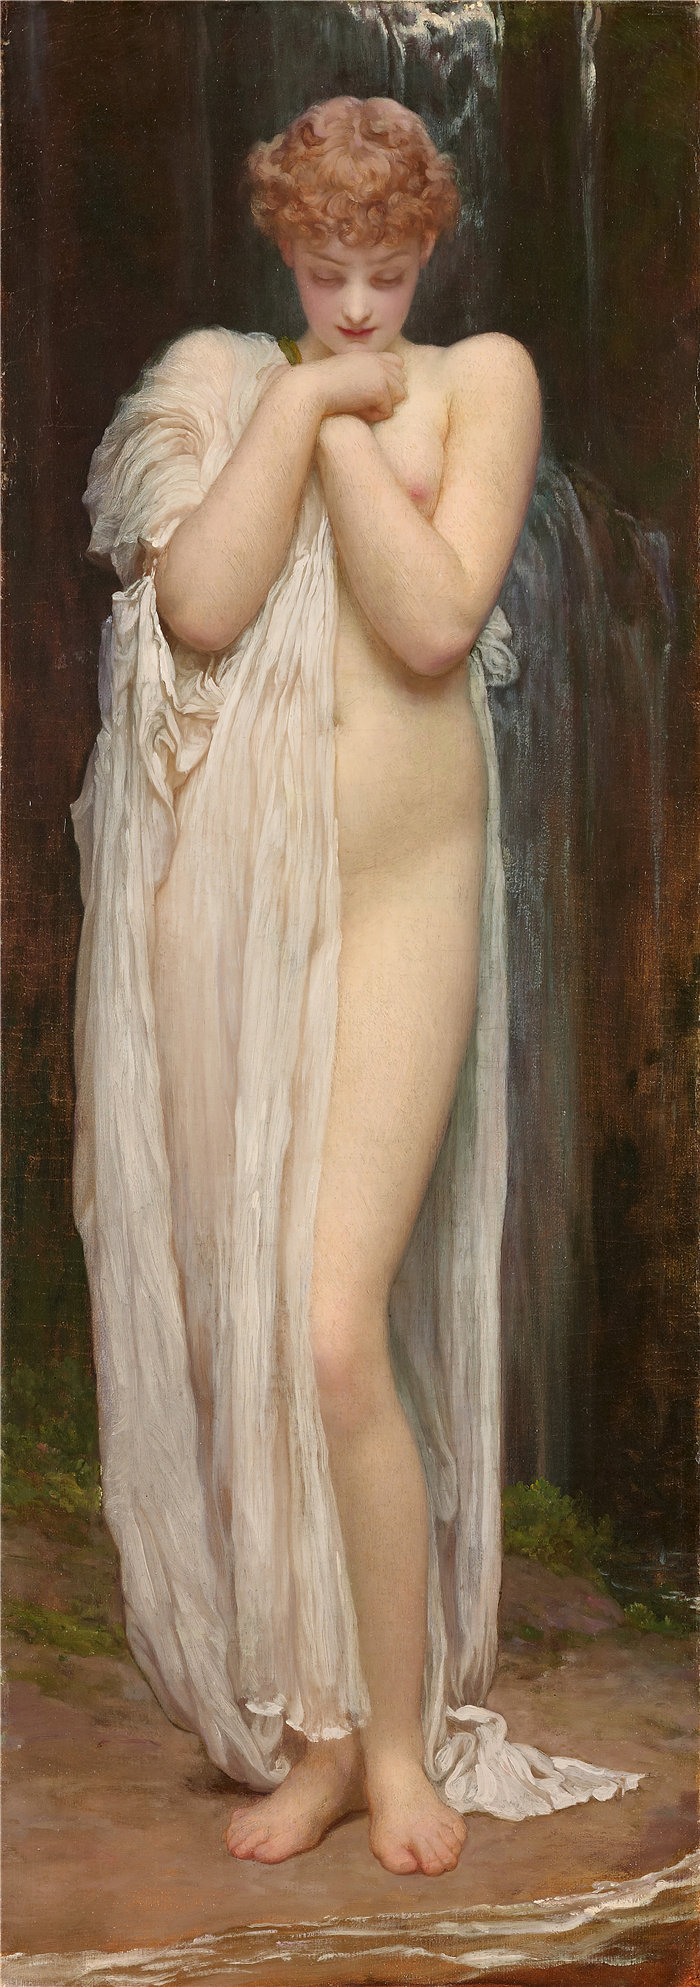 弗雷德里克·莱顿(Frederick Leighton)作品 - Crenaia，达格的若虫 (1880)